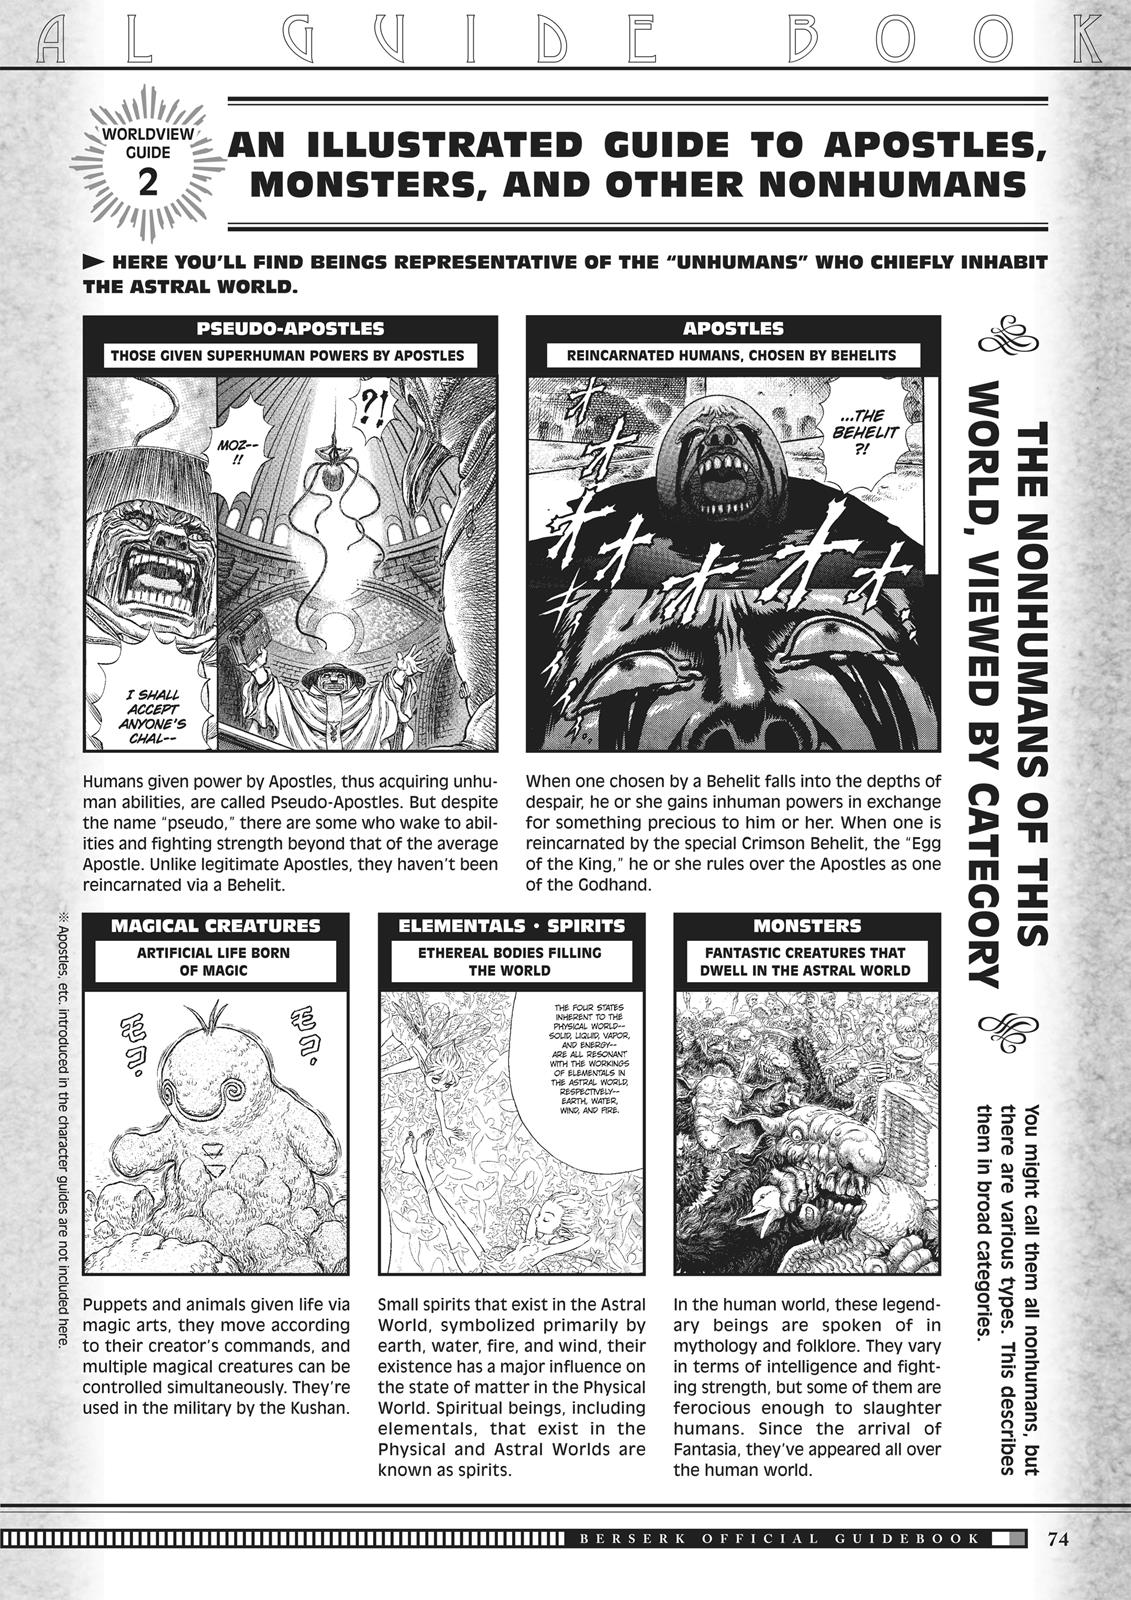 Berserk Manga Chapter 350.5 image 072